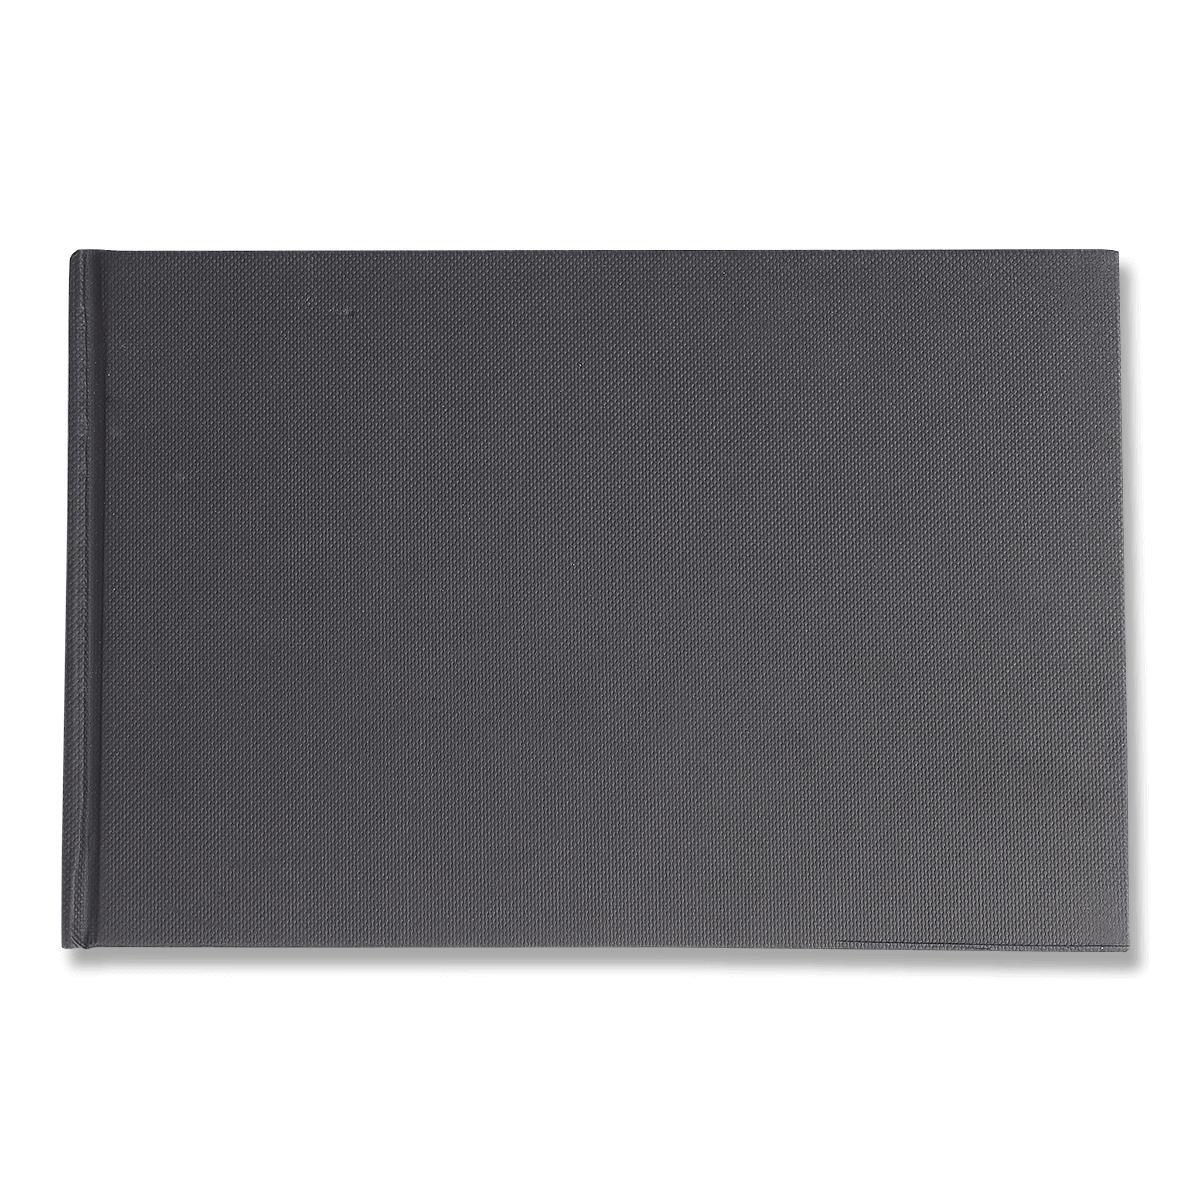 Black hard cover sketchbook. a5